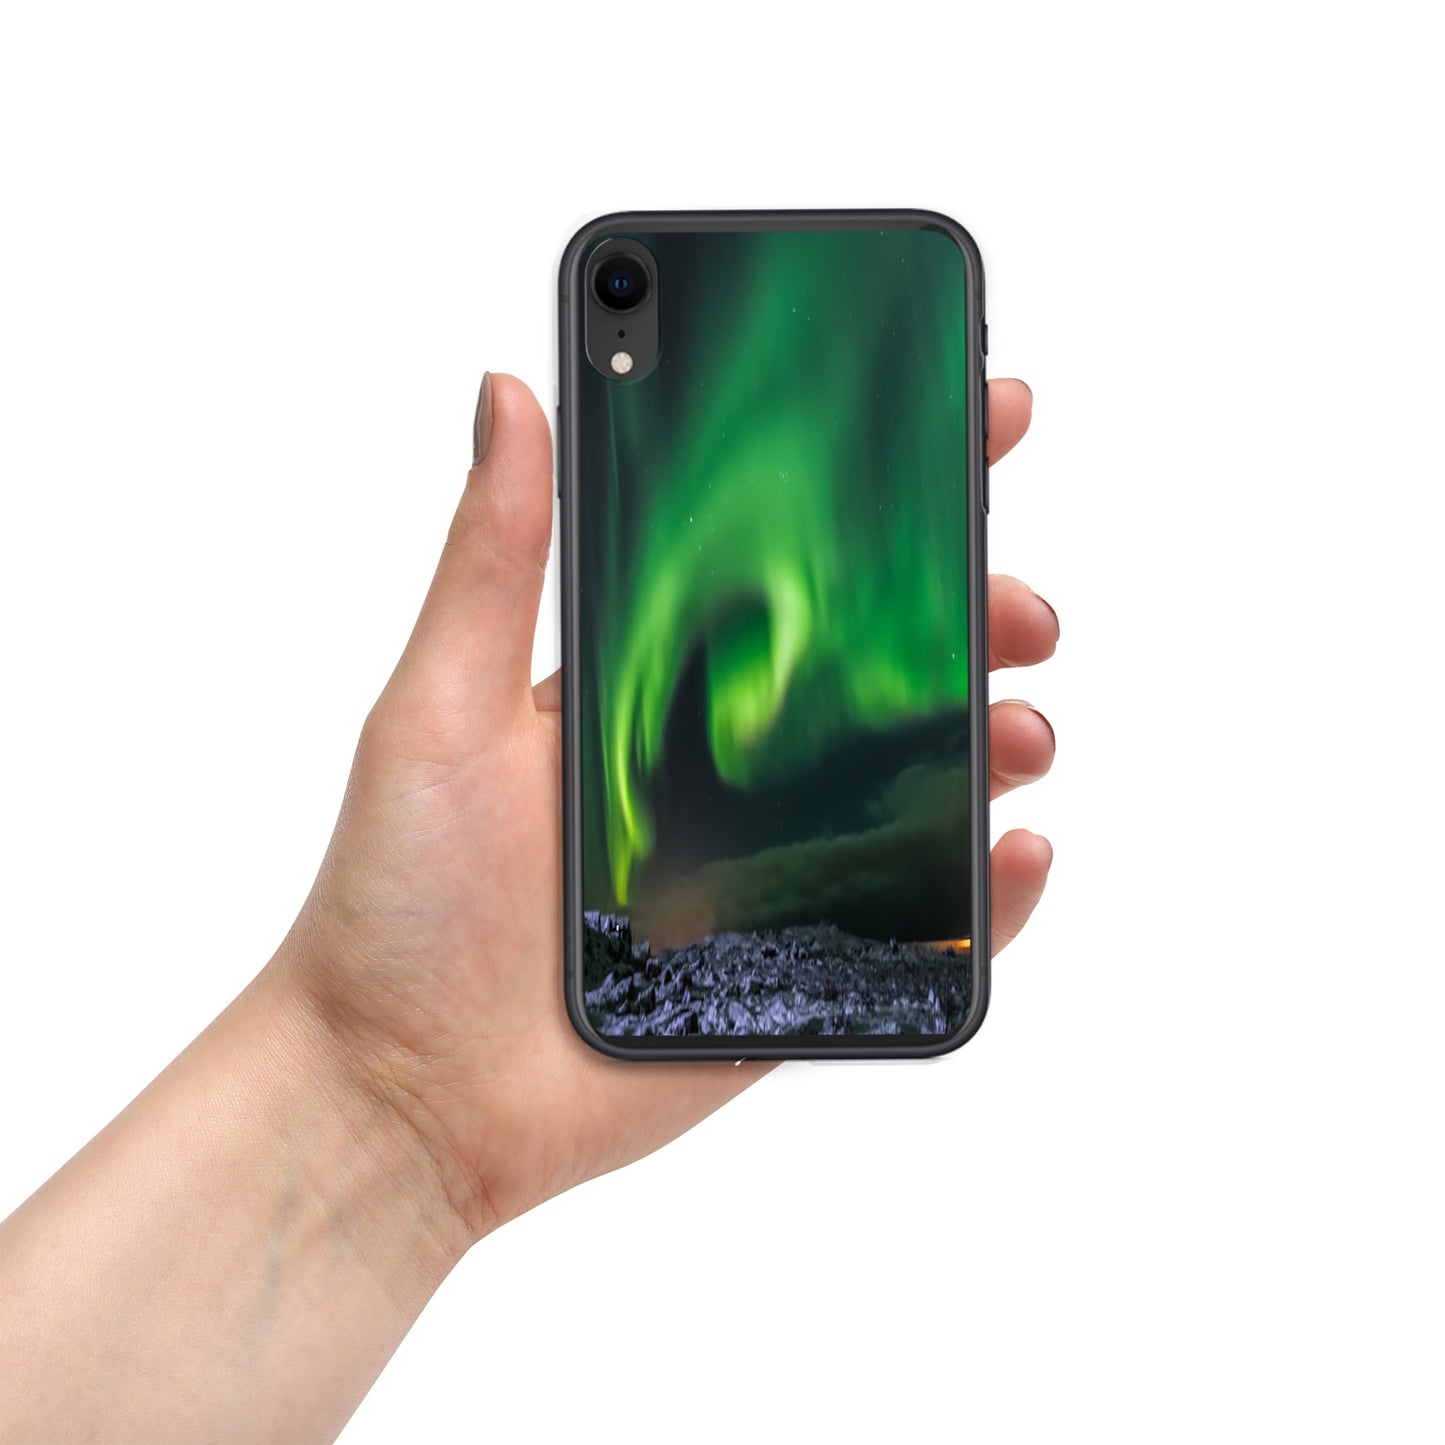 Unique Aurora Borealis iPhone Cover Case - Northern Light Phone Cover Case - Clear Case for iPhone - Perfect Aurora Lovers Gift 5